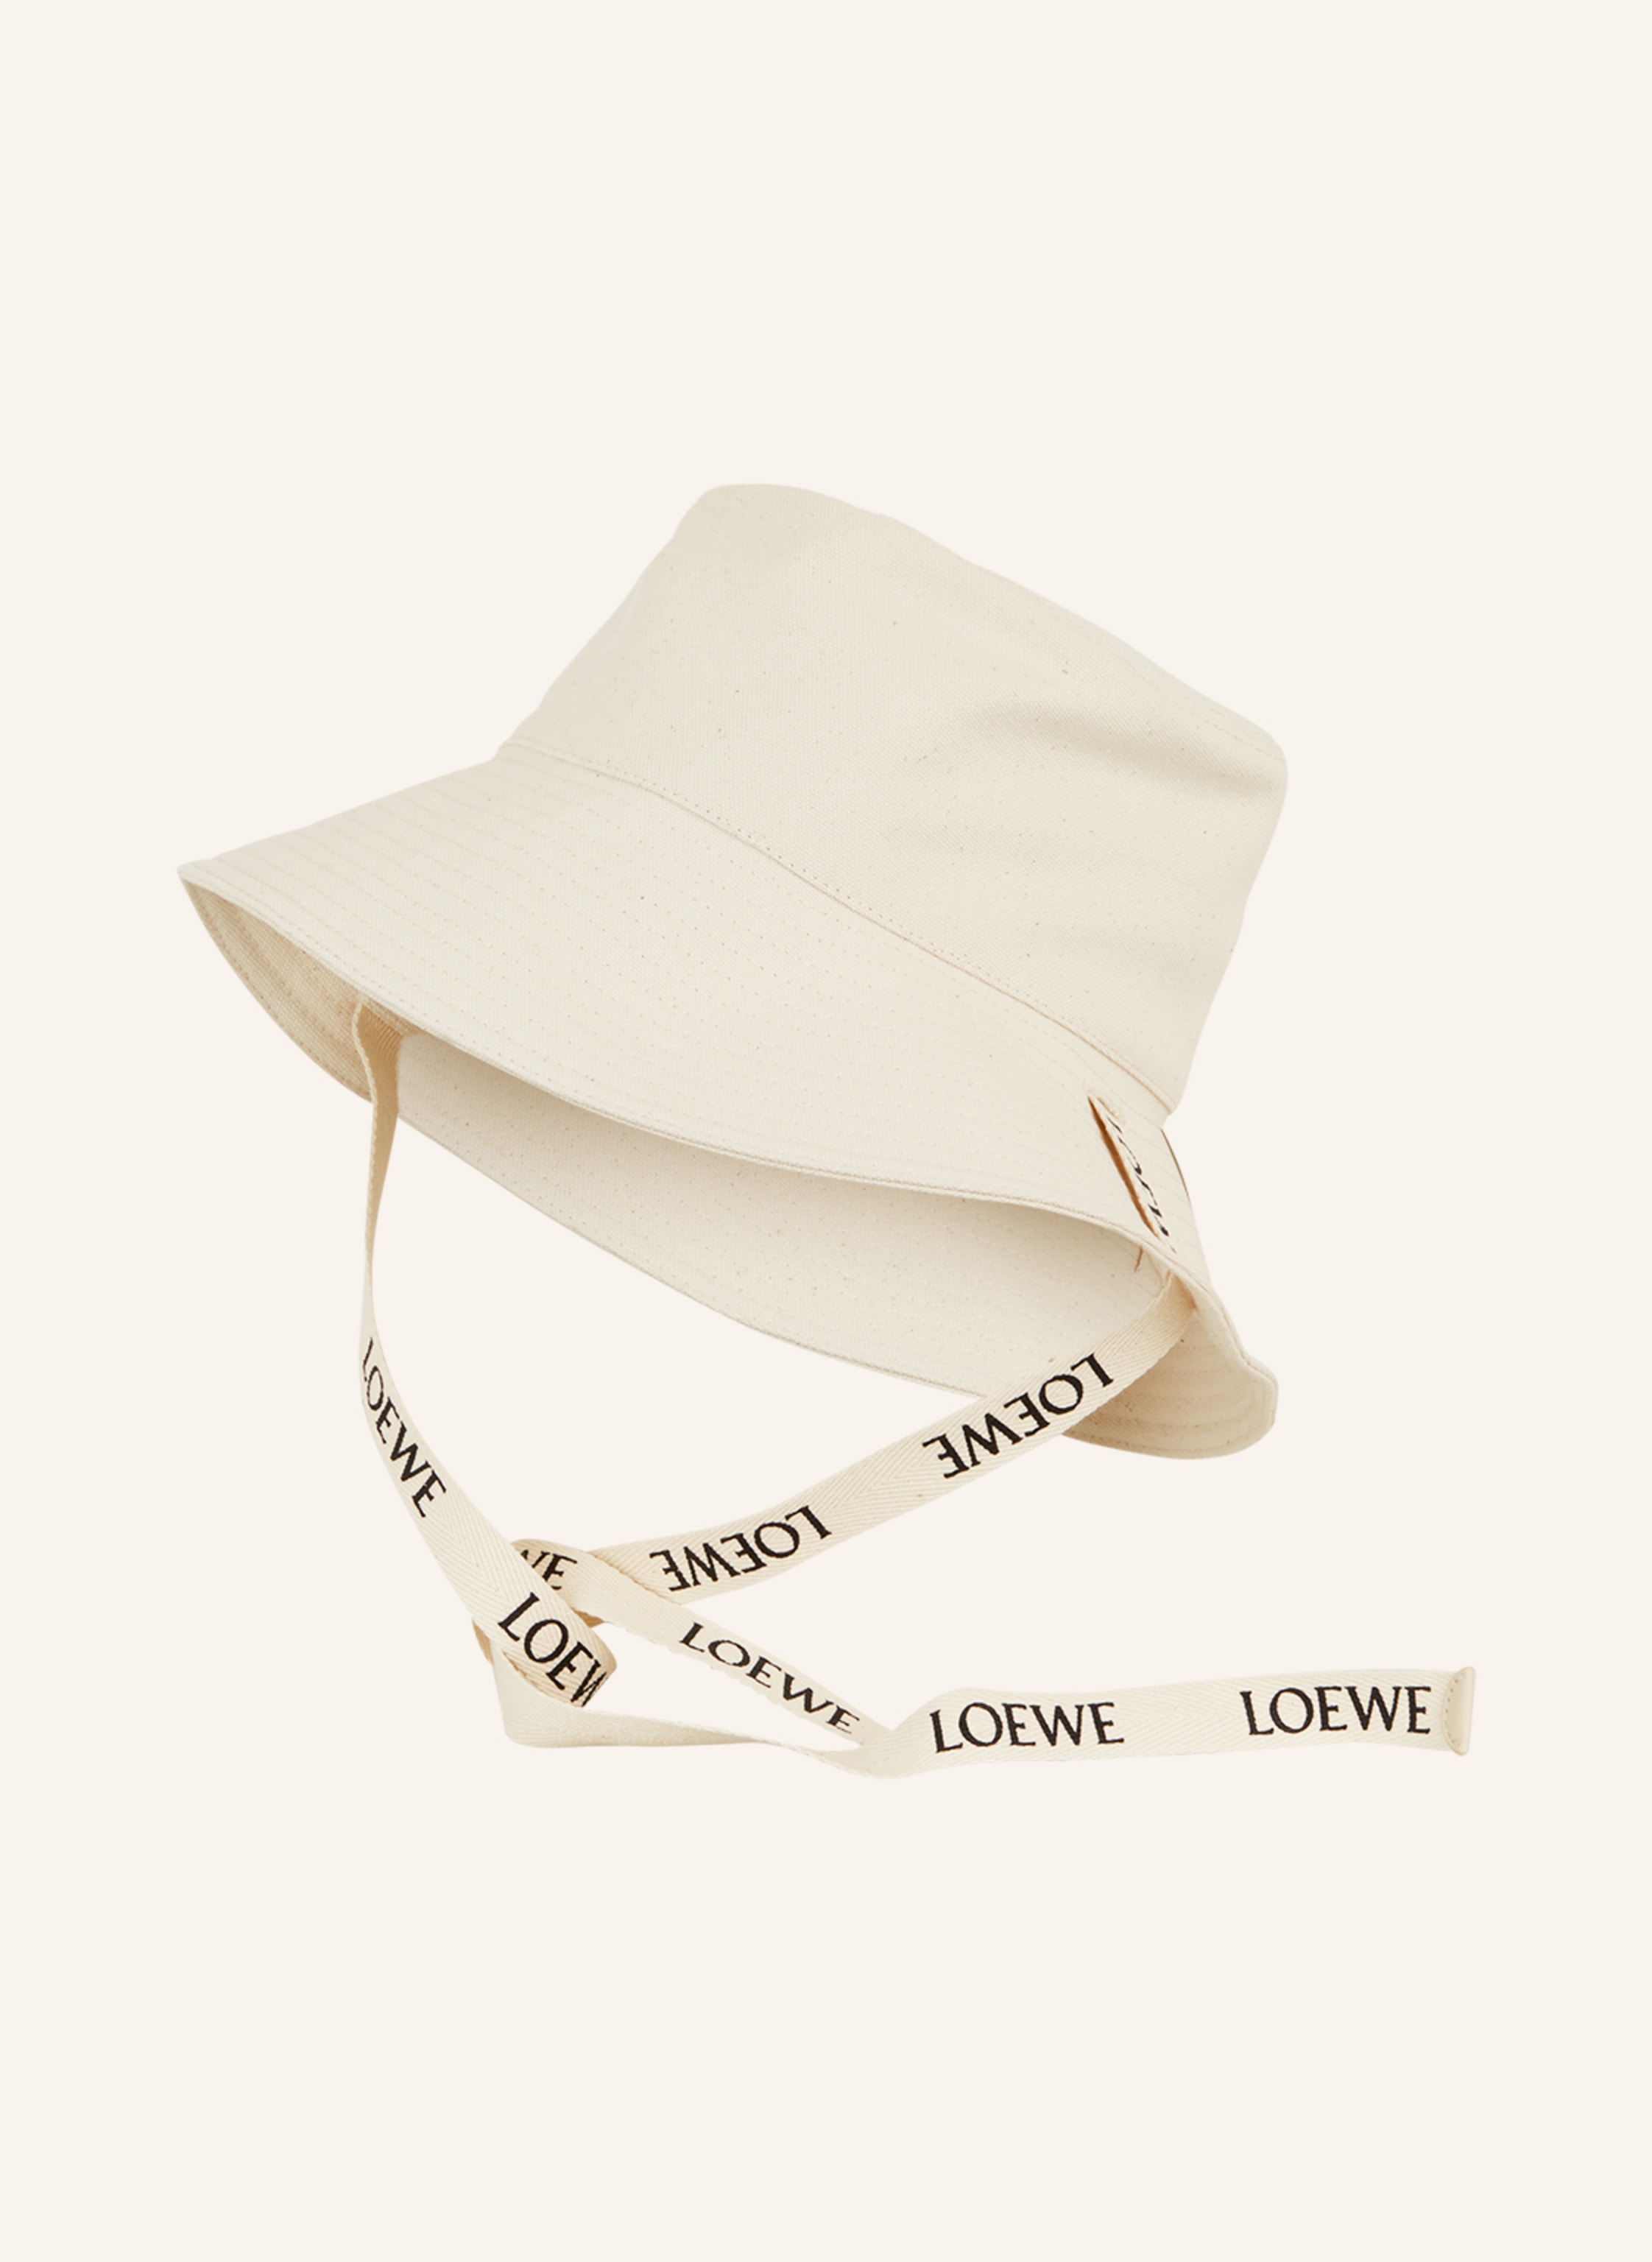 Loewe Paula's IBIZA- Logo Bucket Hat- Woman- 57 - Beige